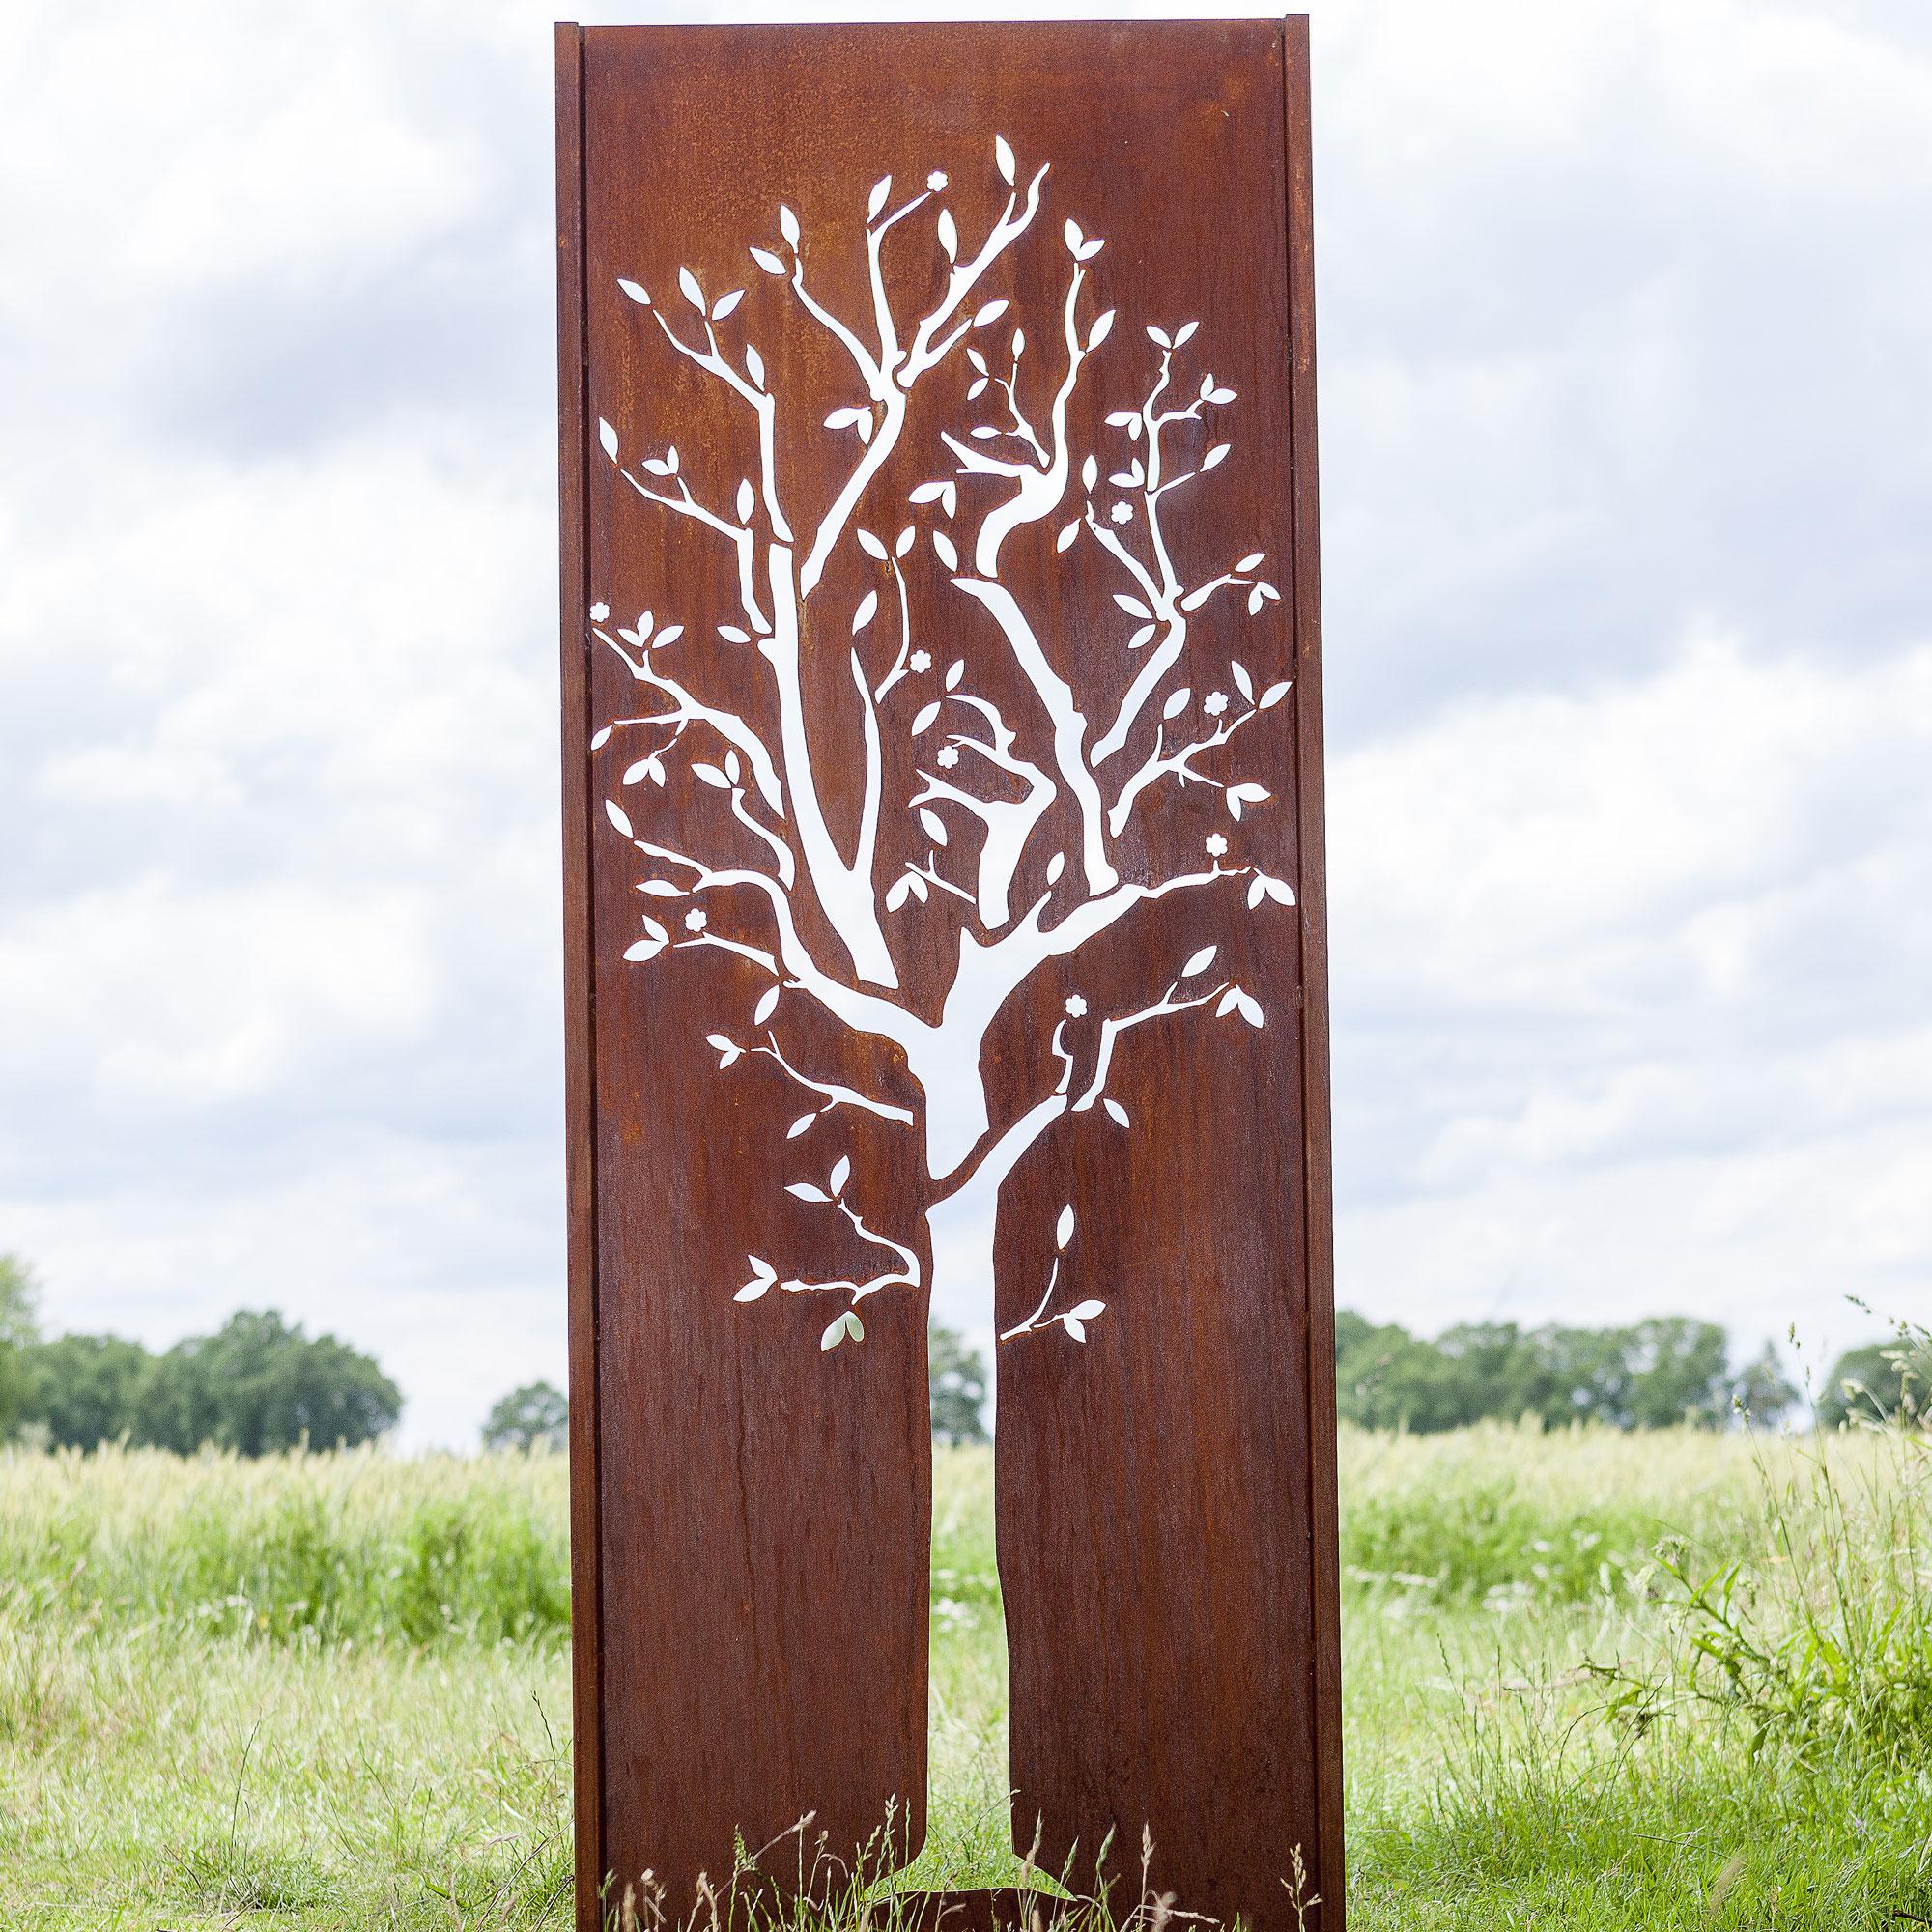 Steel Garden Wall - "Tree" - Modern Outdoor Ornament - 75×195 cm - Sculpture by Stefan Traloc